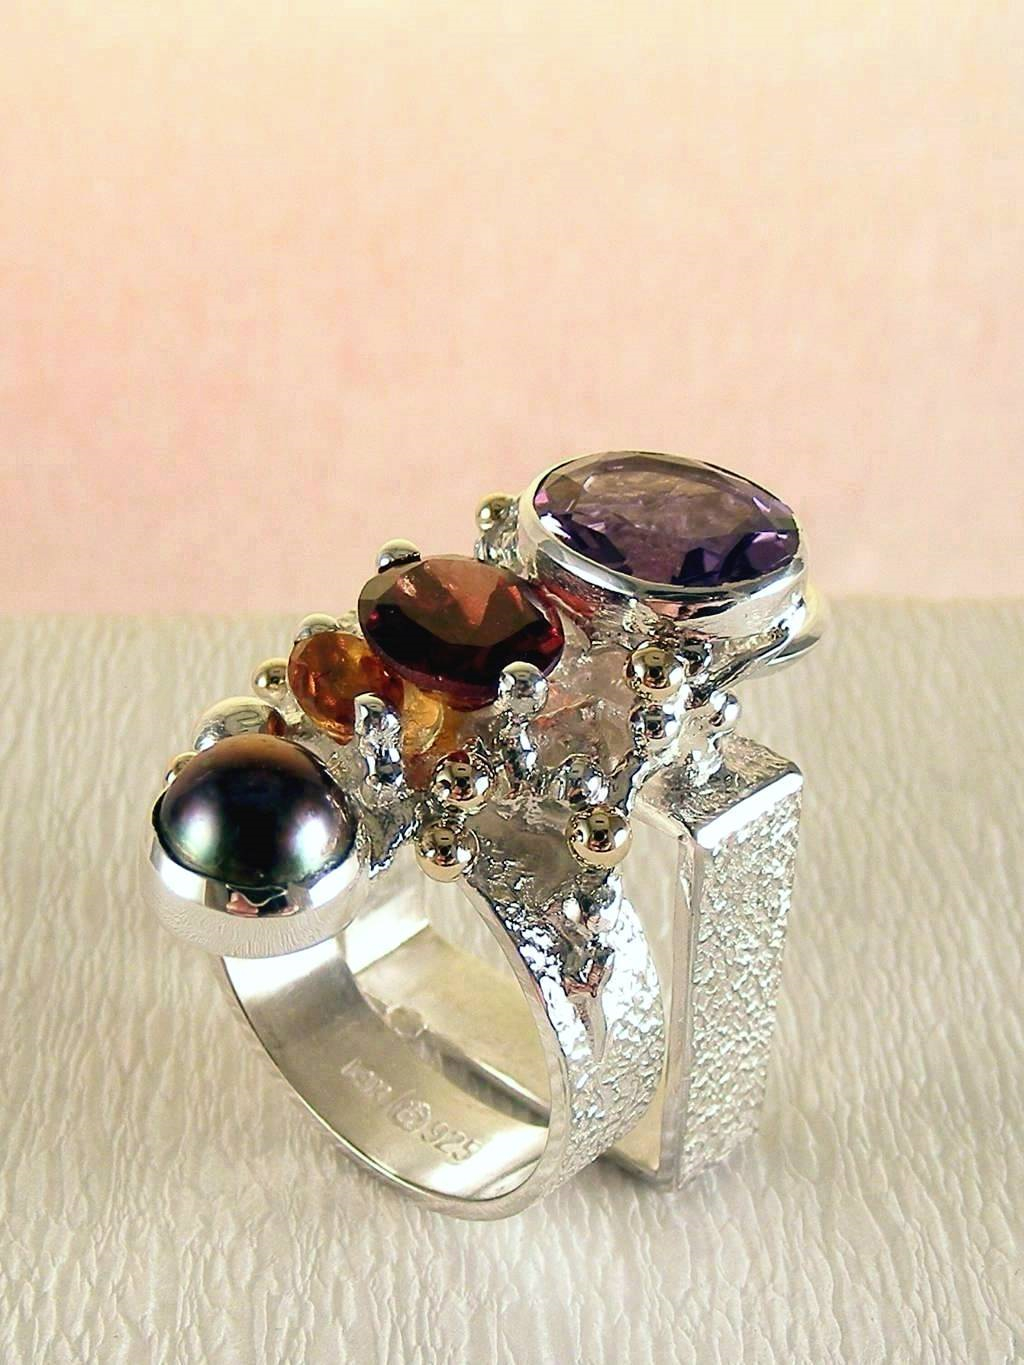 módní šperky, modní styl, sběratelská položka, šperky vyrobené ze stříbra a zlata, ručně vyráběný prsten s ametystem a granátem, ručně vyráběný prsten s citrinem a granátem, ručně vyráběný prsten s granátem a perlou, ručně vyráběný prsten s ametystem a perlou, Gregory Pyra Piro prstýnek 2631